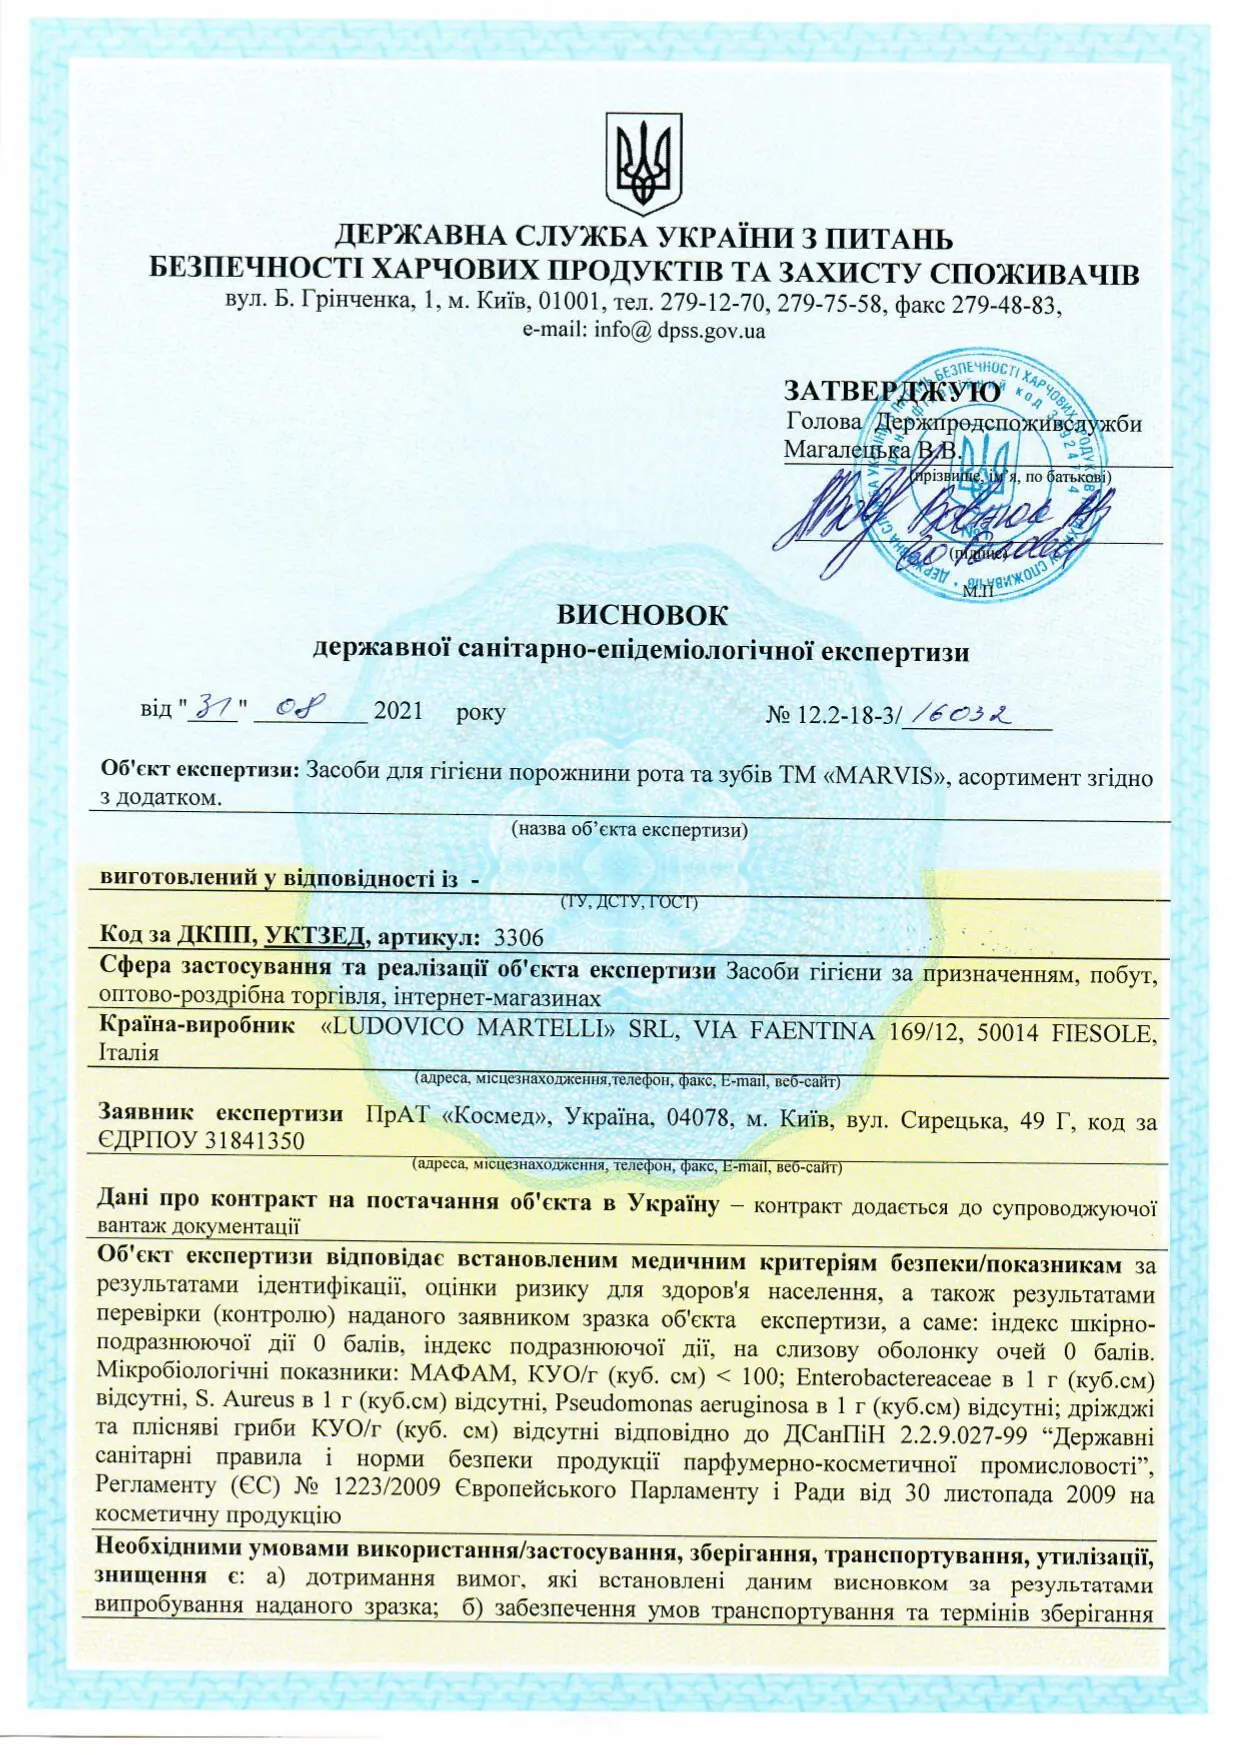 Сертифікат відповідності до державних санітарно-епідемічних стандартів косметичних засобів для гігієни порожнини рота та зубів ТМ Marvis